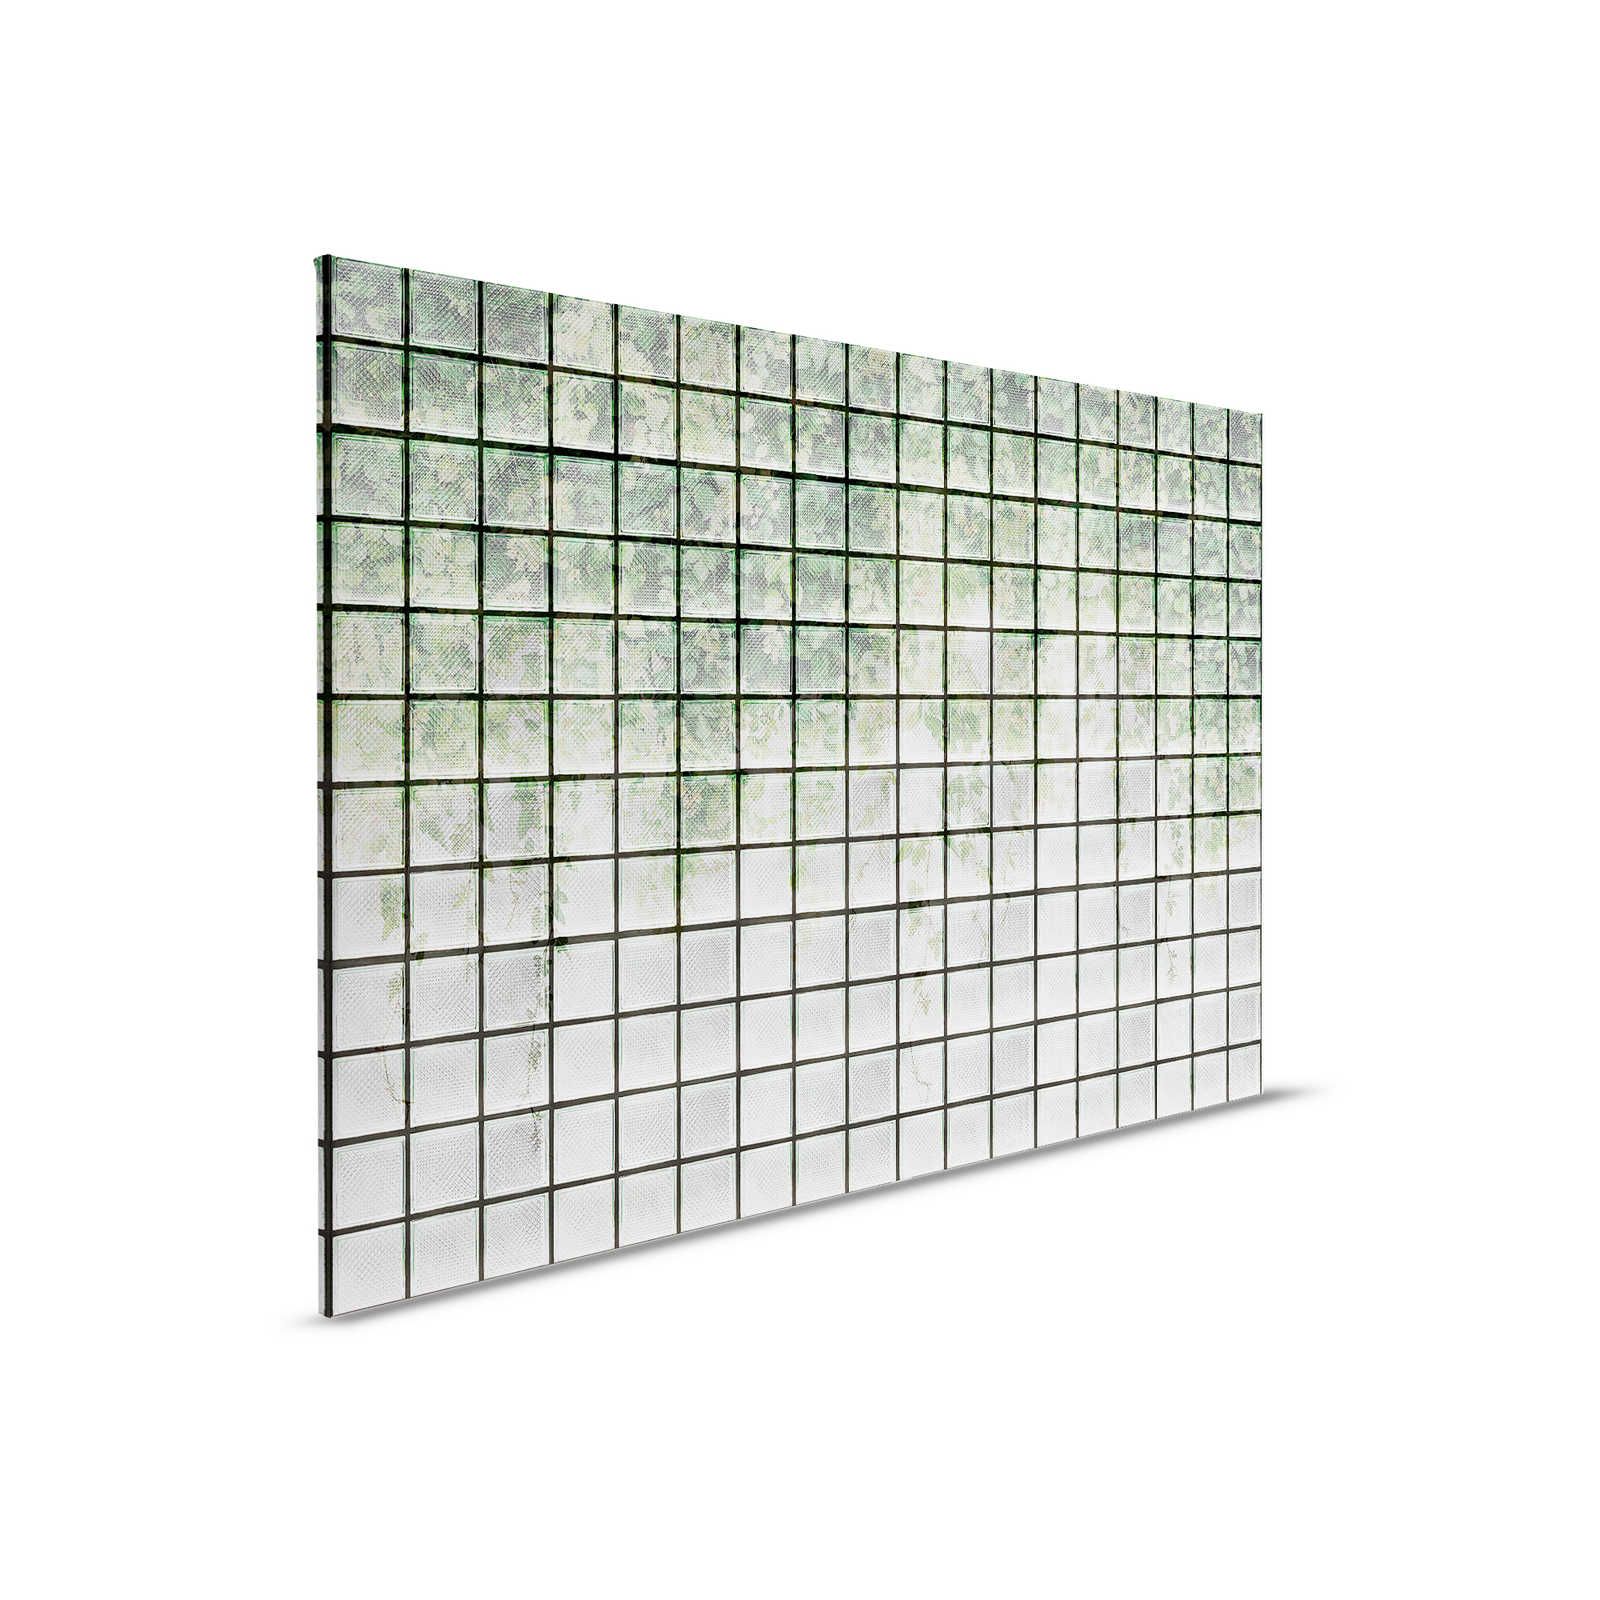         Green House 2 - Gewächshaus Leinwandbild Blätter & Glasbausteine – 0,90 m x 0,60 m
    